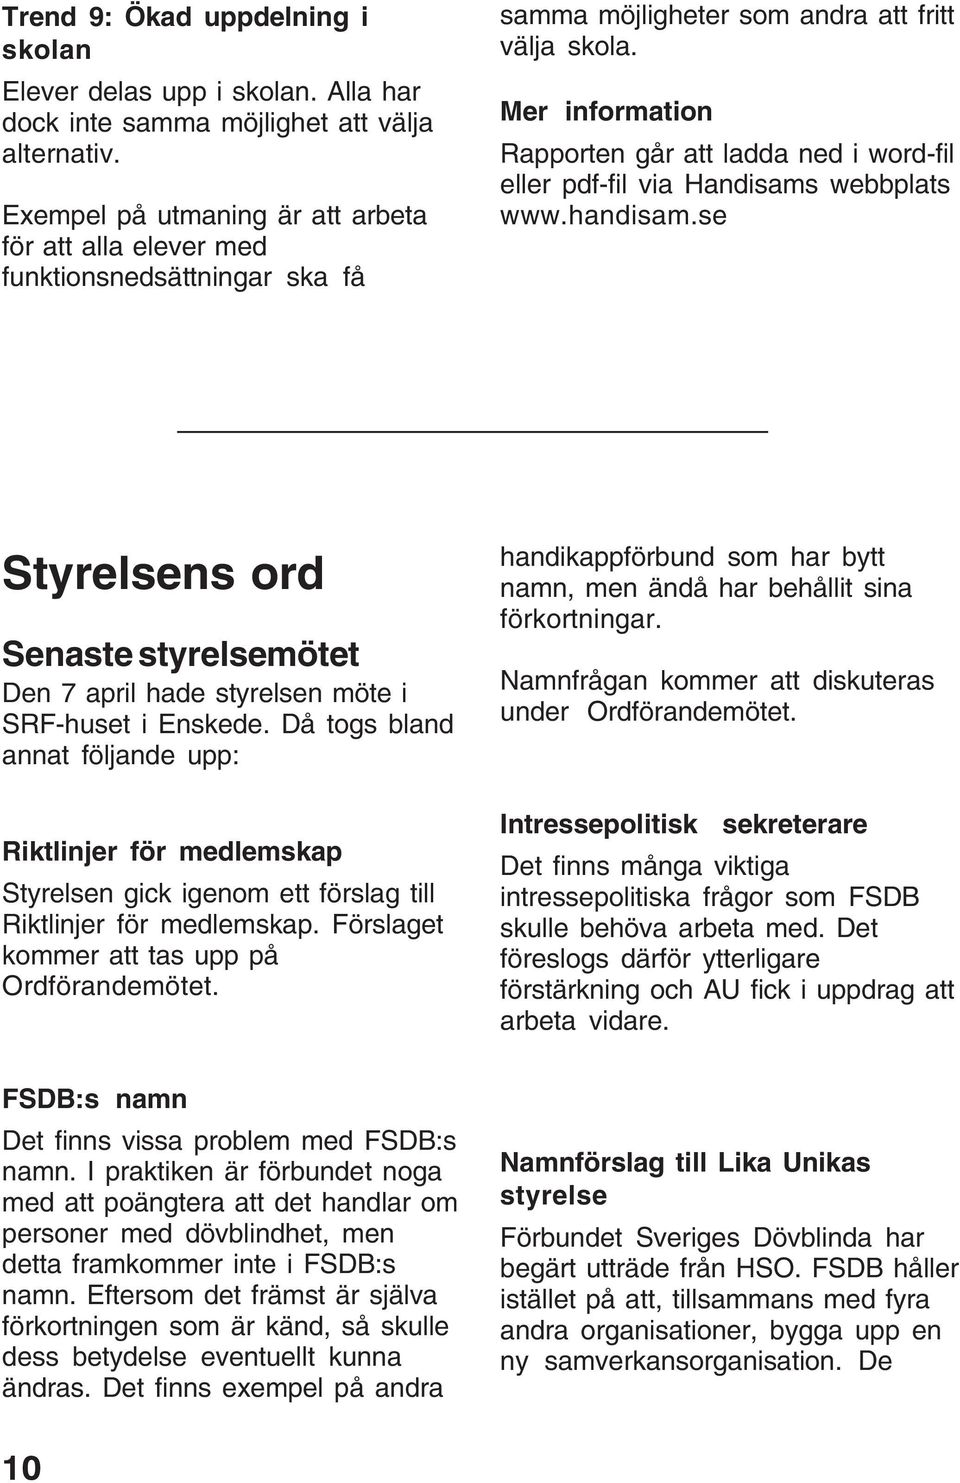 Mer information Rapporten går att ladda ned i word-fil eller pdf-fil via Handisams webbplats www.handisam.se Styrelsens ord Senaste styrelsemötet Den 7 april hade styrelsen möte i SRF-huset i Enskede.